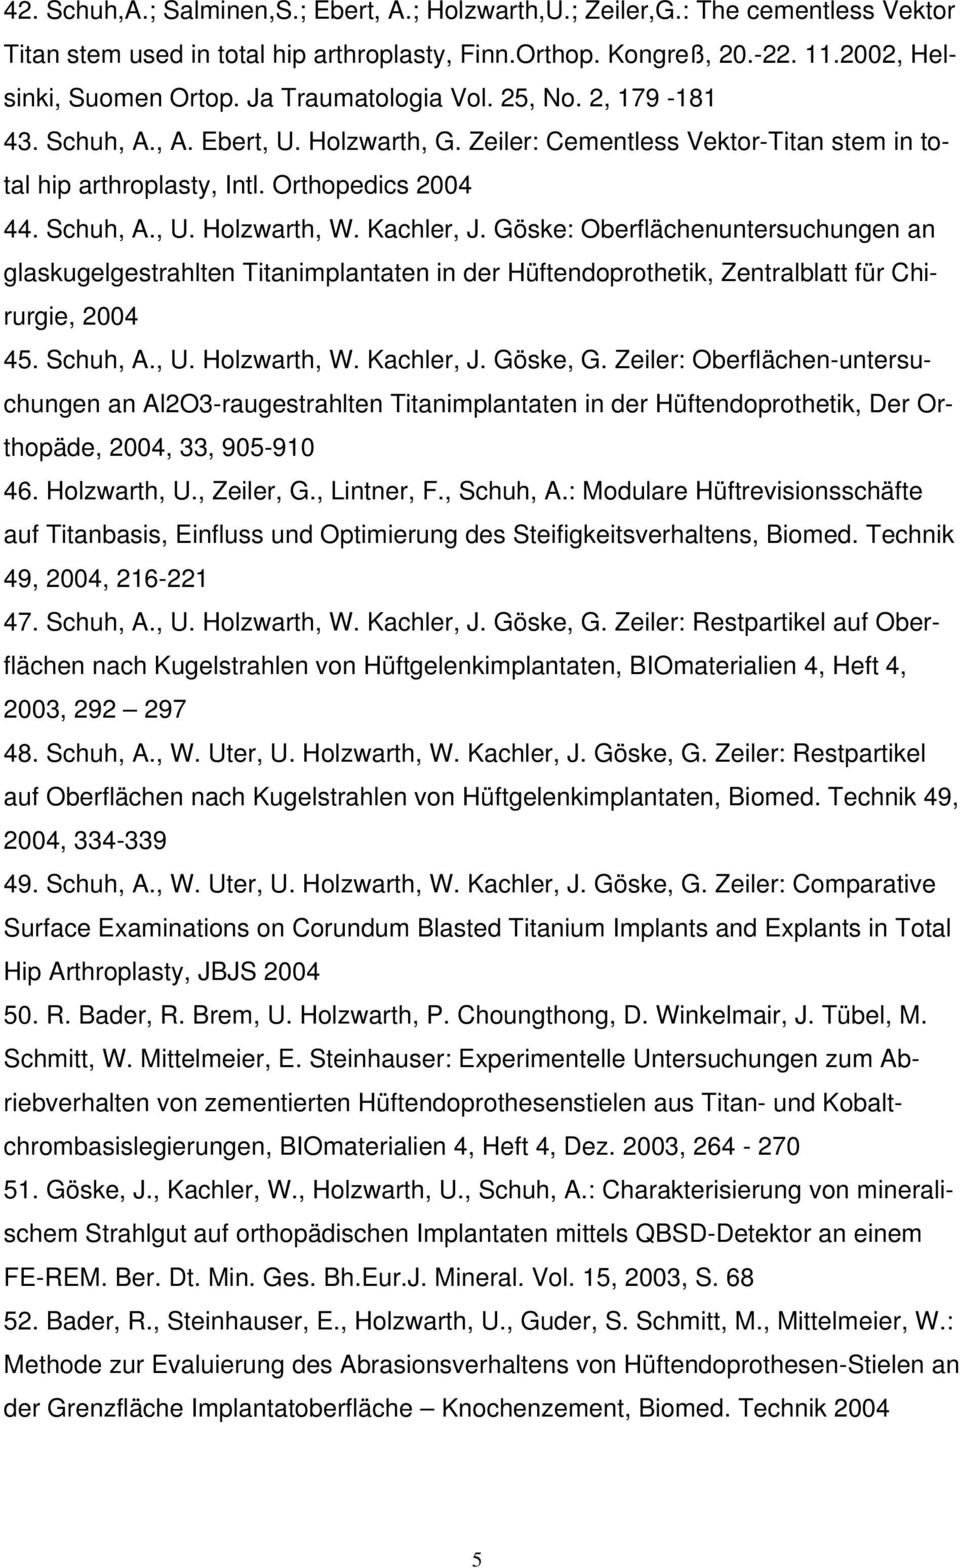 Kachler, J. Göske: Oberflächenuntersuchungen an glaskugelgestrahlten Titanimplantaten in der Hüftendoprothetik, Zentralblatt für Chirurgie, 2004 45. Schuh, A., U. Holzwarth, W. Kachler, J. Göske, G.